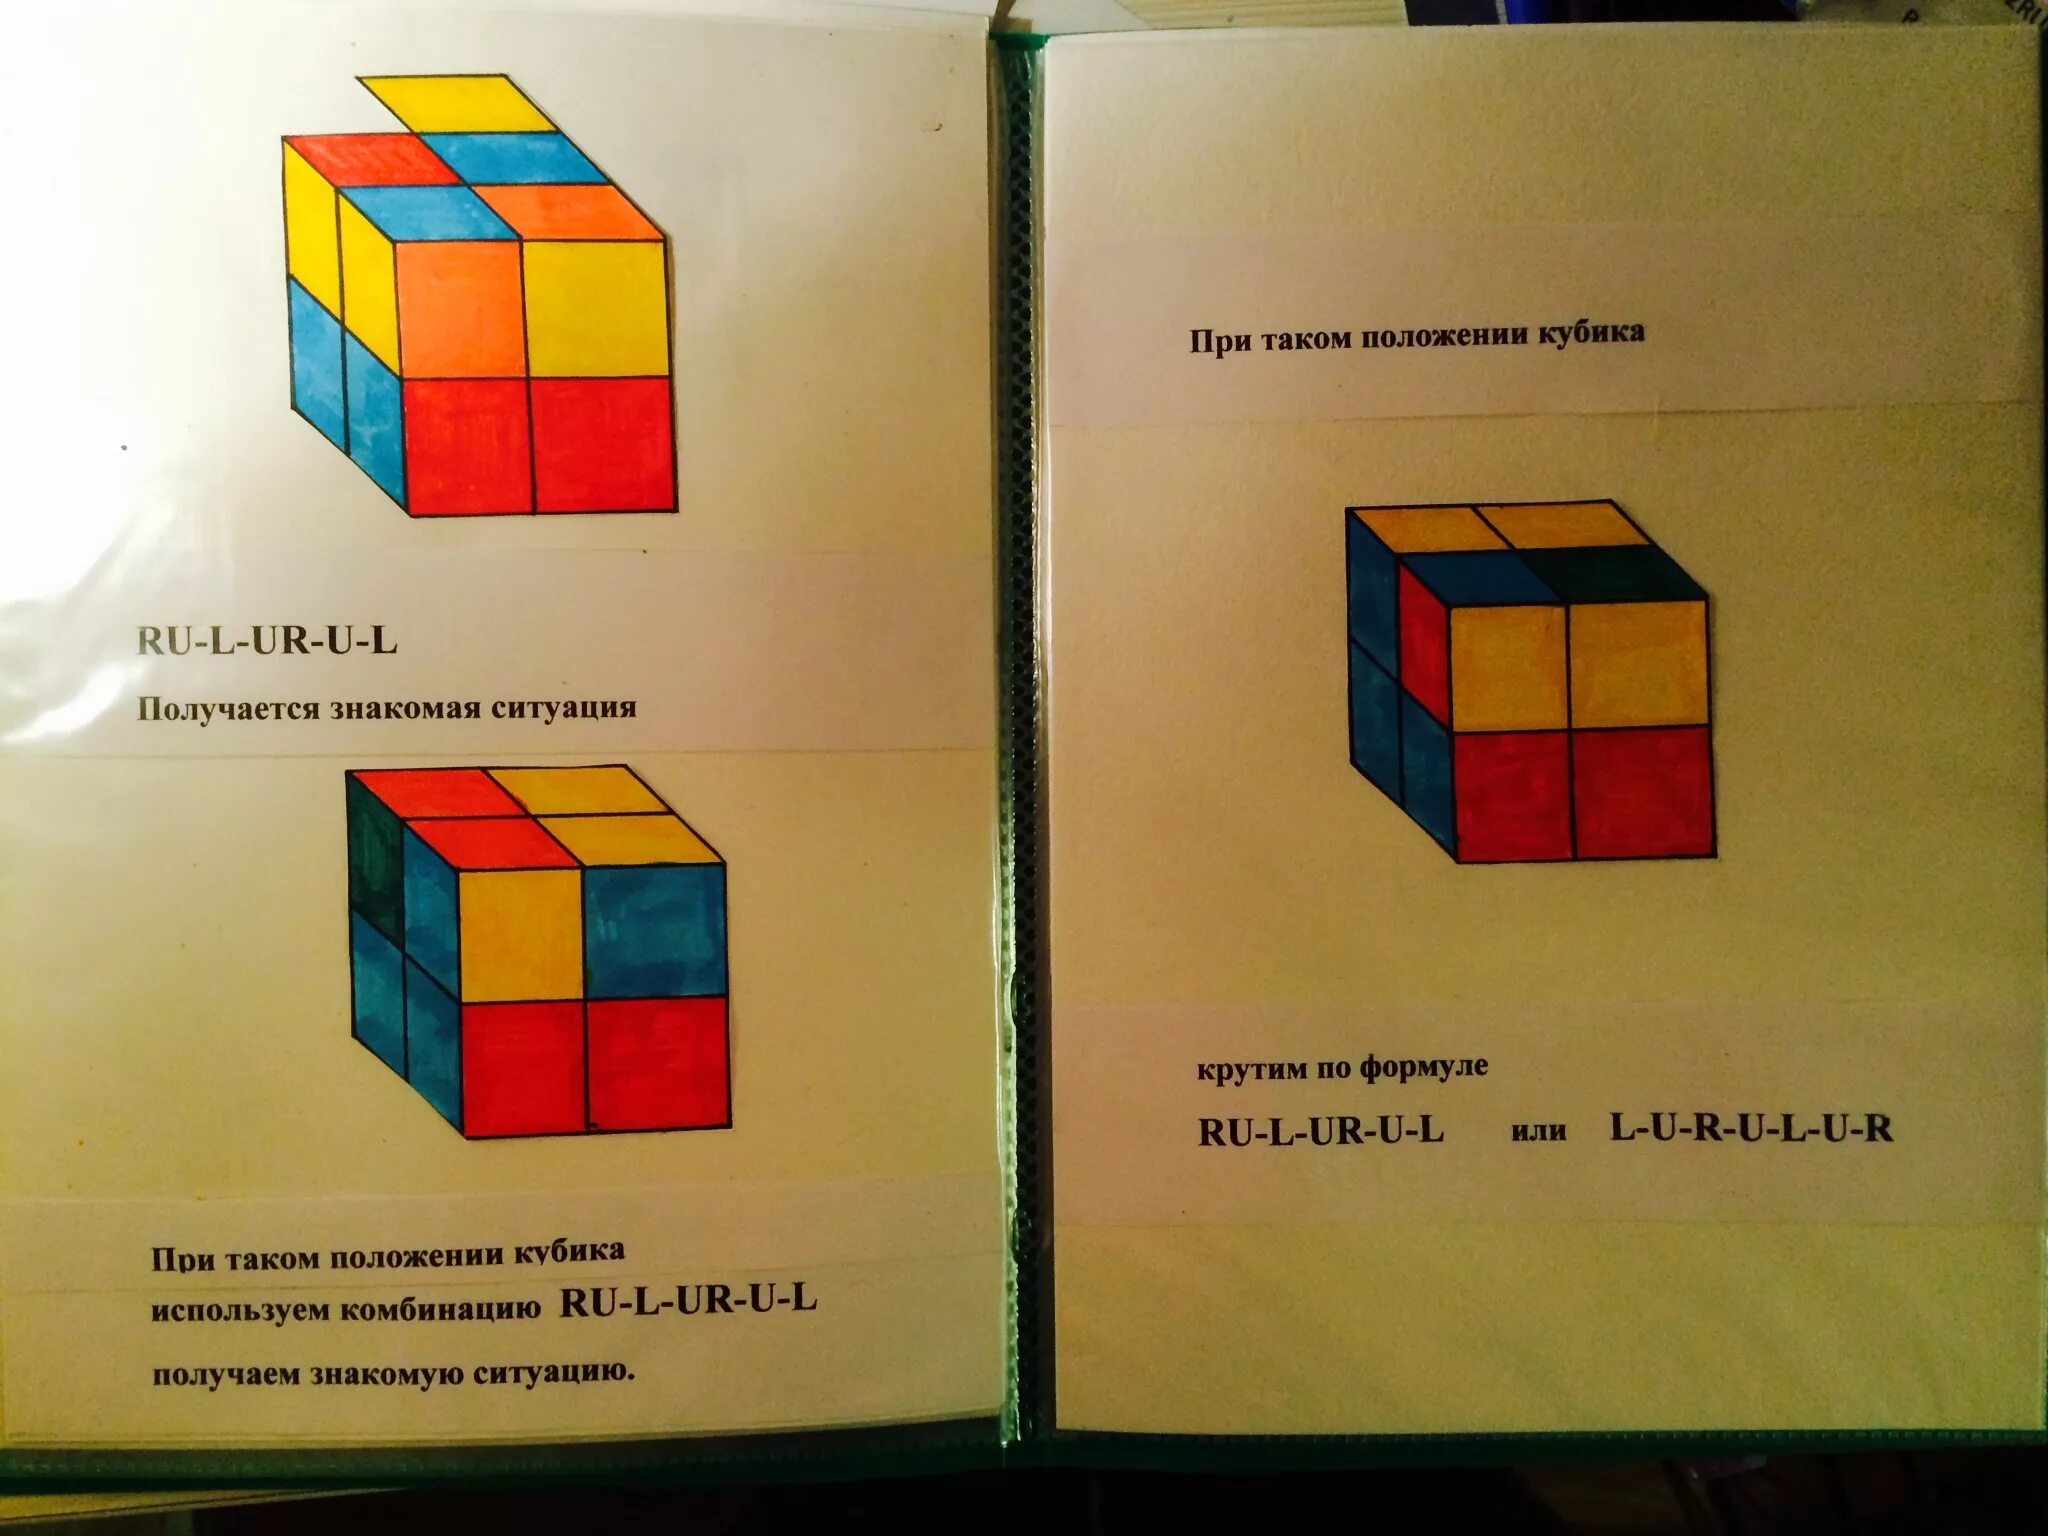 Формула сбора кубика Рубика 2х2. Кубик рубик 2х2 формулы сборки кубика. Алгоритм сборки кубика Рубика 2 на 2. Формула сборки кубика Рубика 2 на 2. Сборка кубика рубика 2 2 3